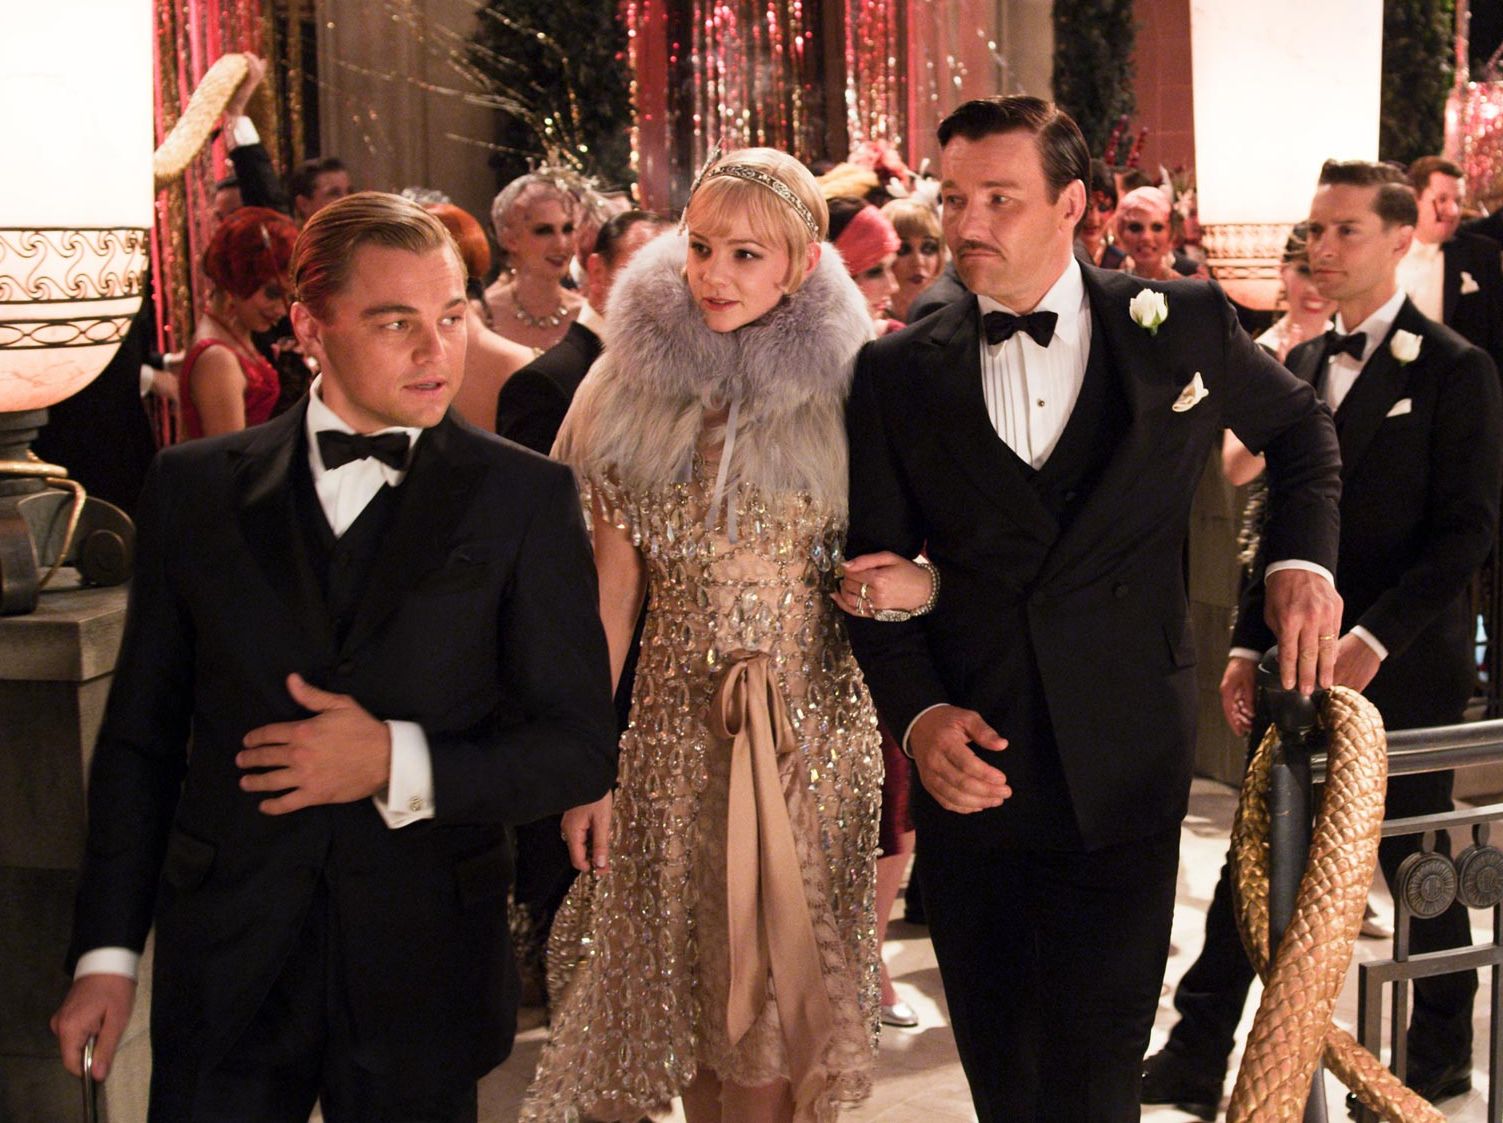 Τα κοστούμια του Great Gatsby εκτίθενται στην Νέα Υόρκη